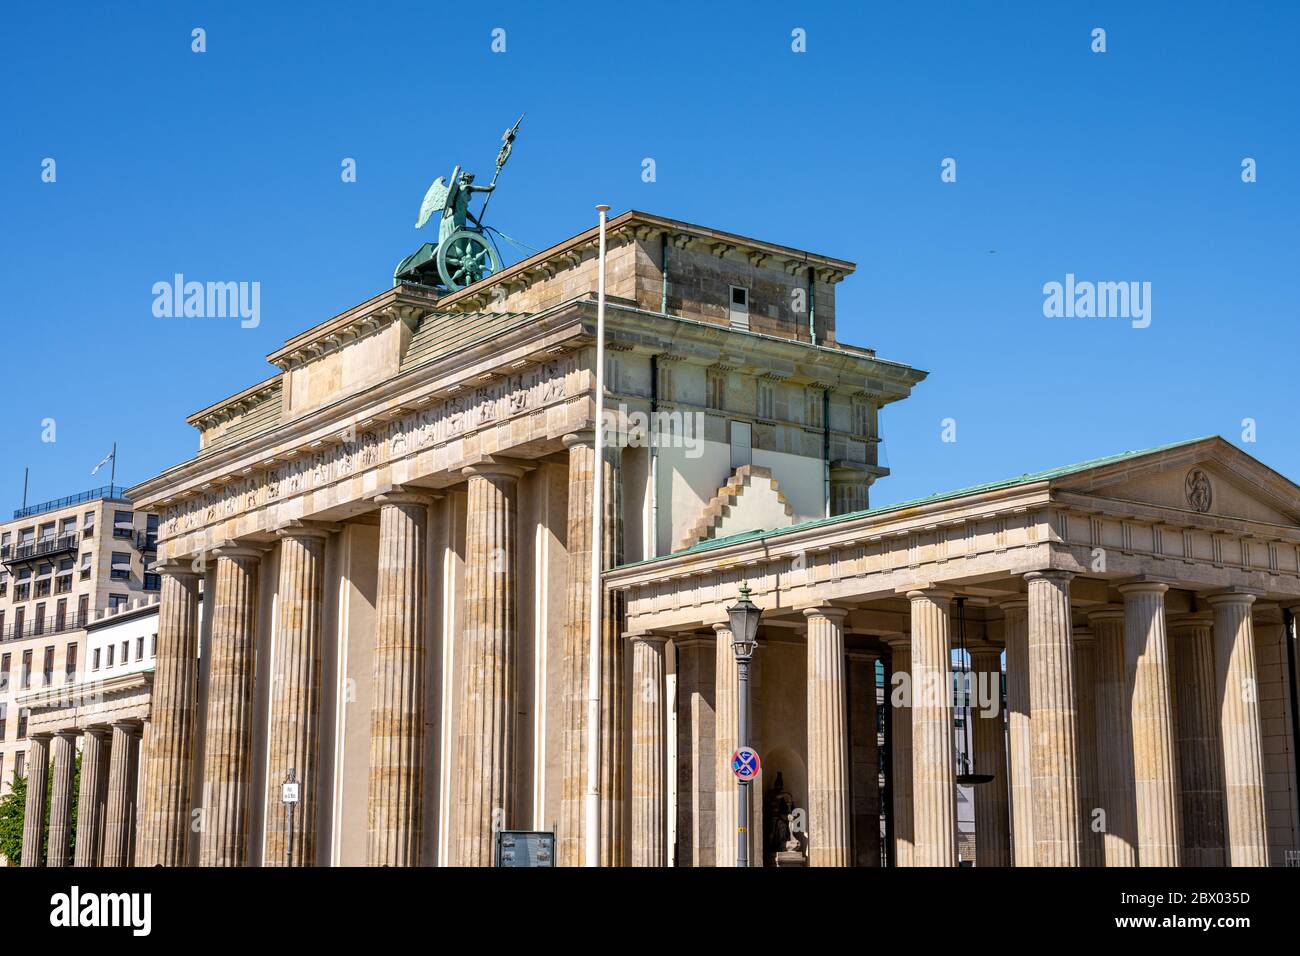 The backside of the Brandenburg Gate in Berlin, Germany Stock Photo